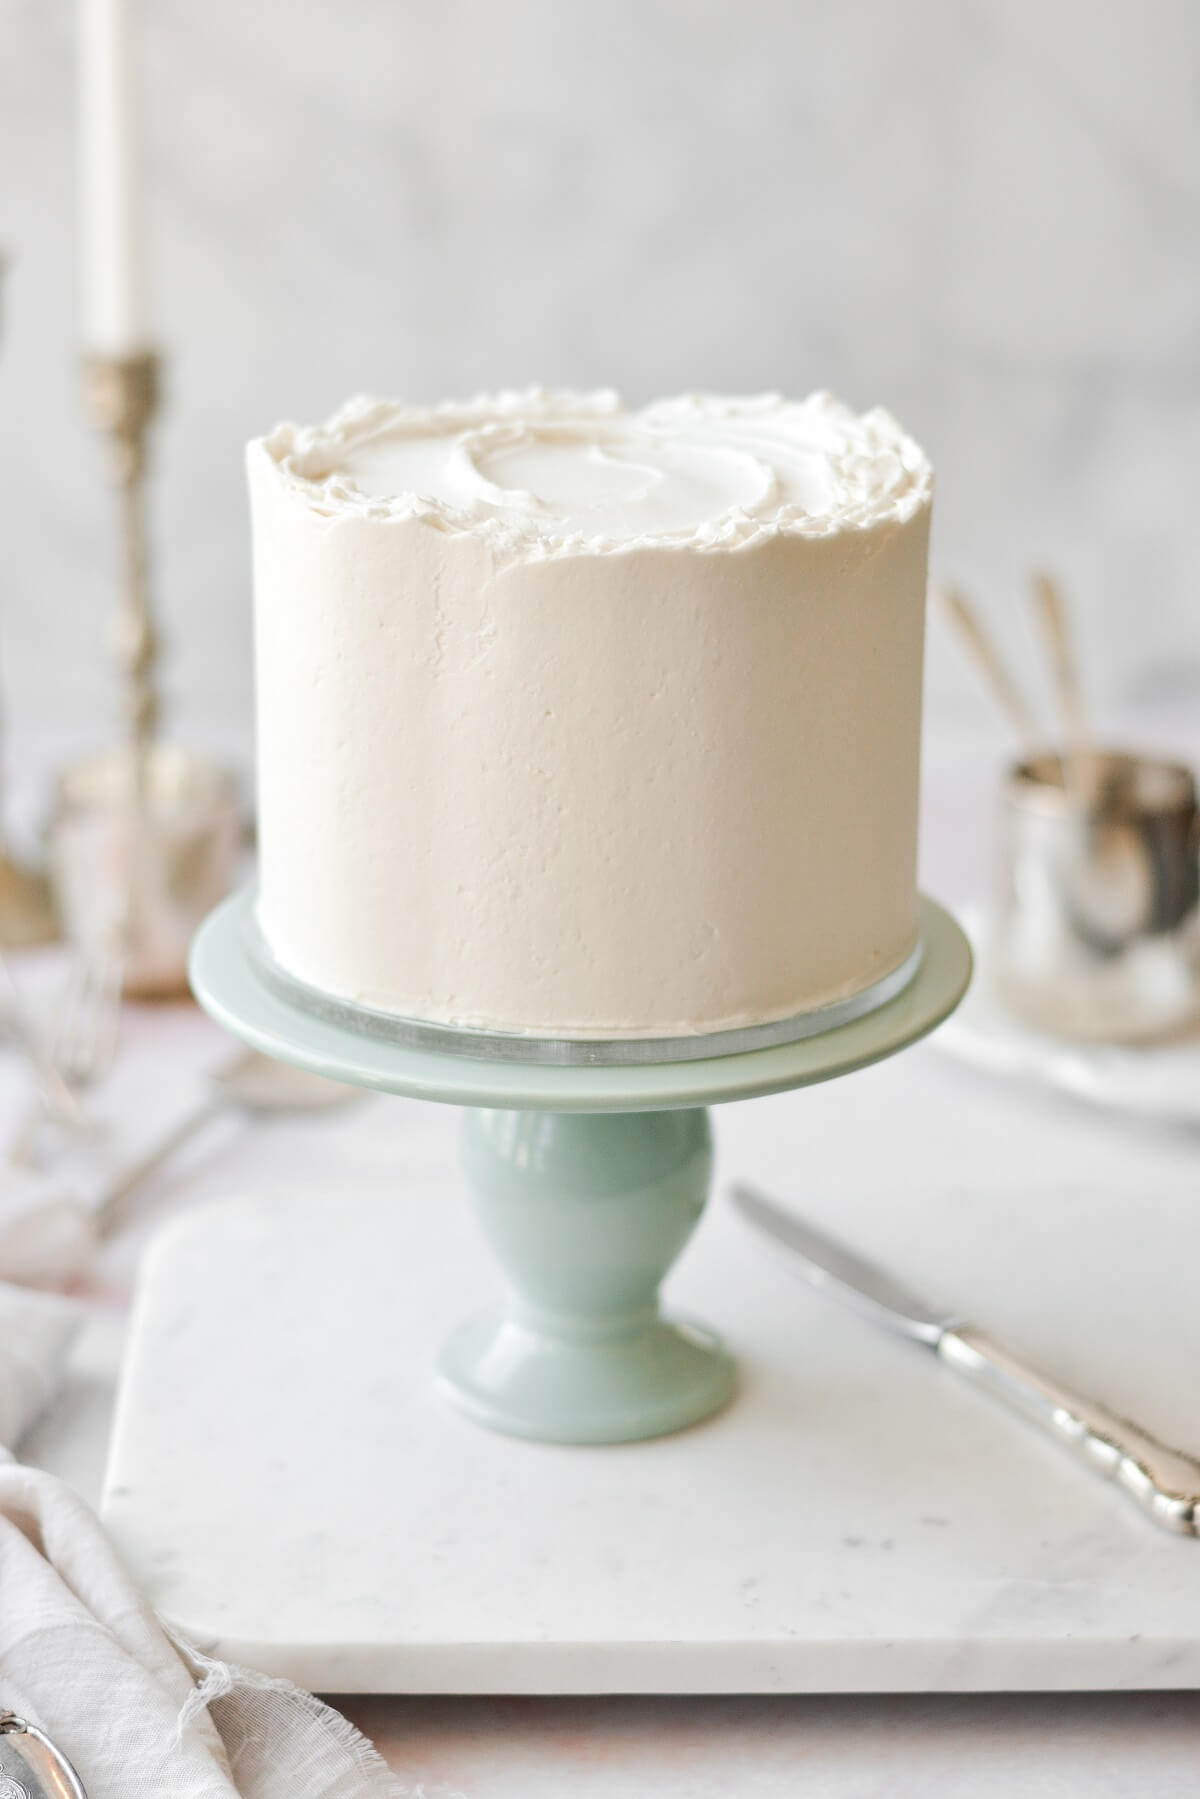 White velvet cake on a sage green cake stand.